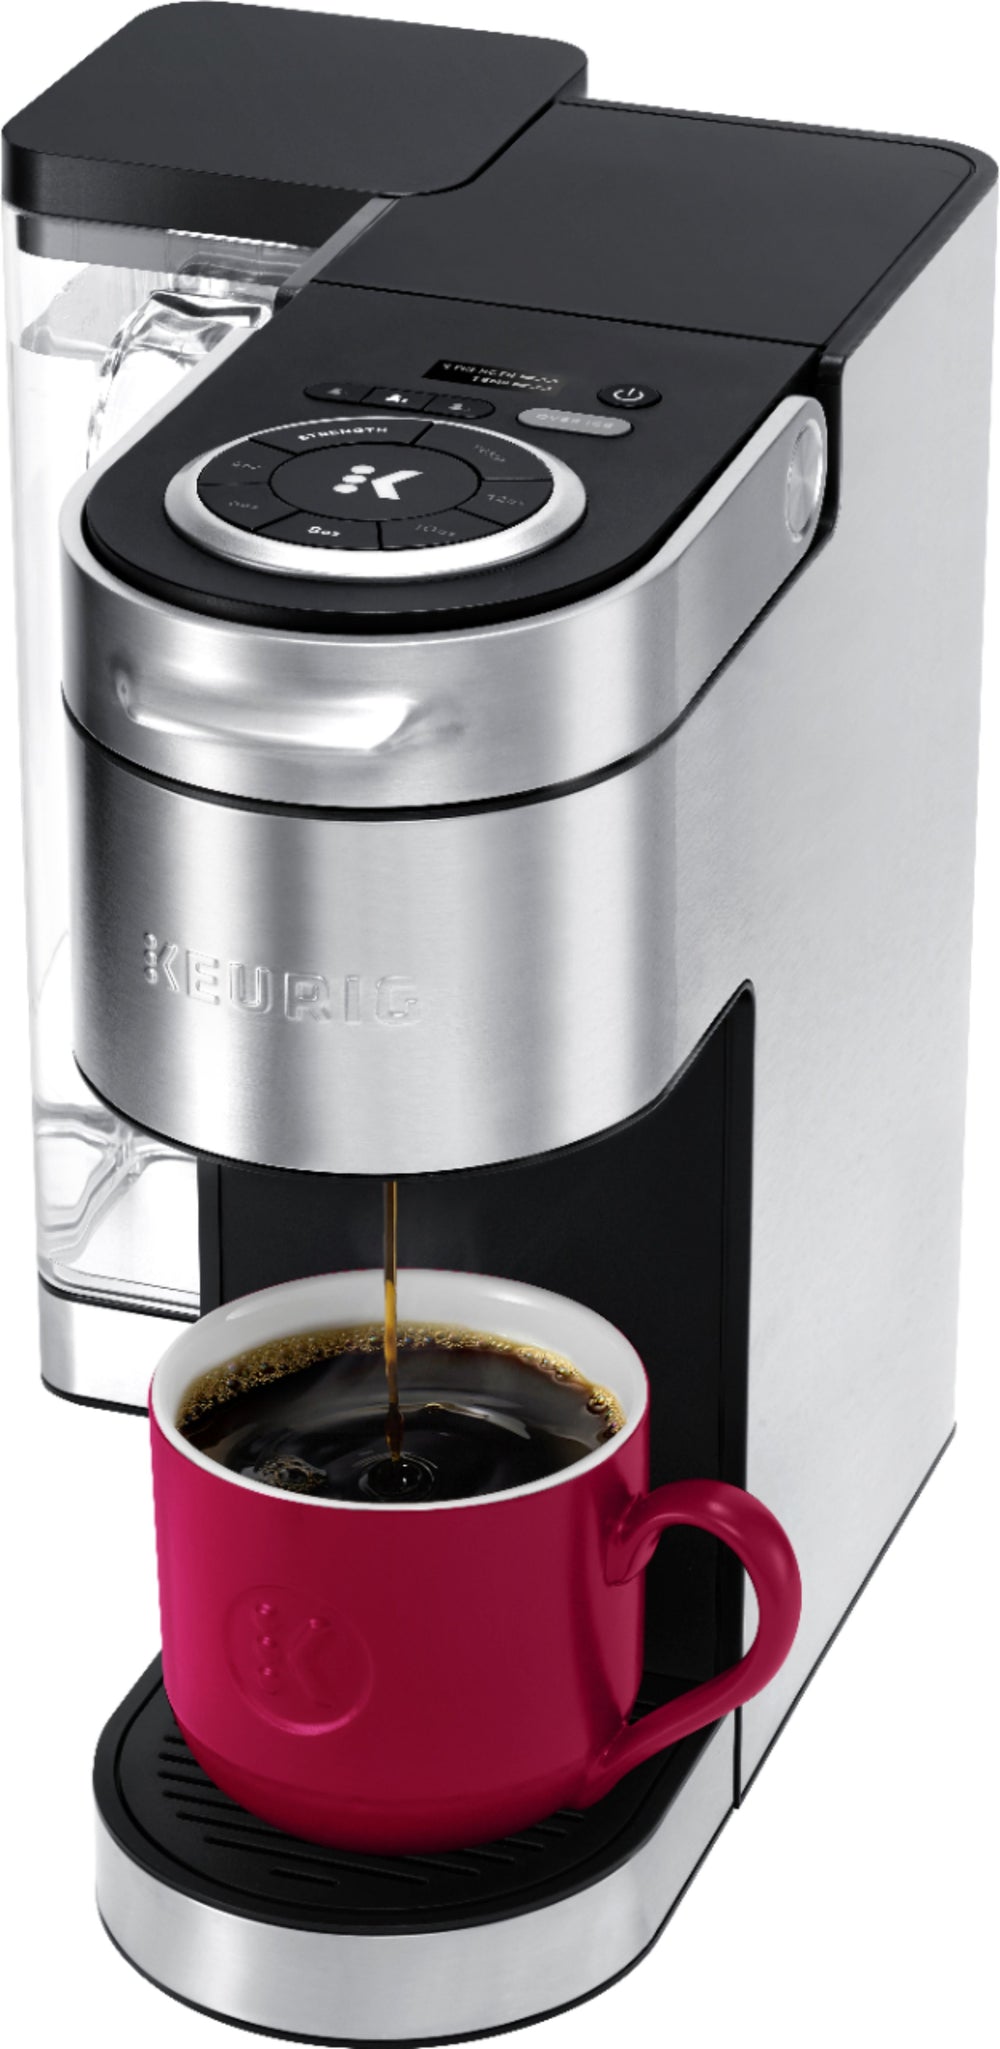 Keurig - K-Supreme Plus Coffee Maker - Stainless Steel_1